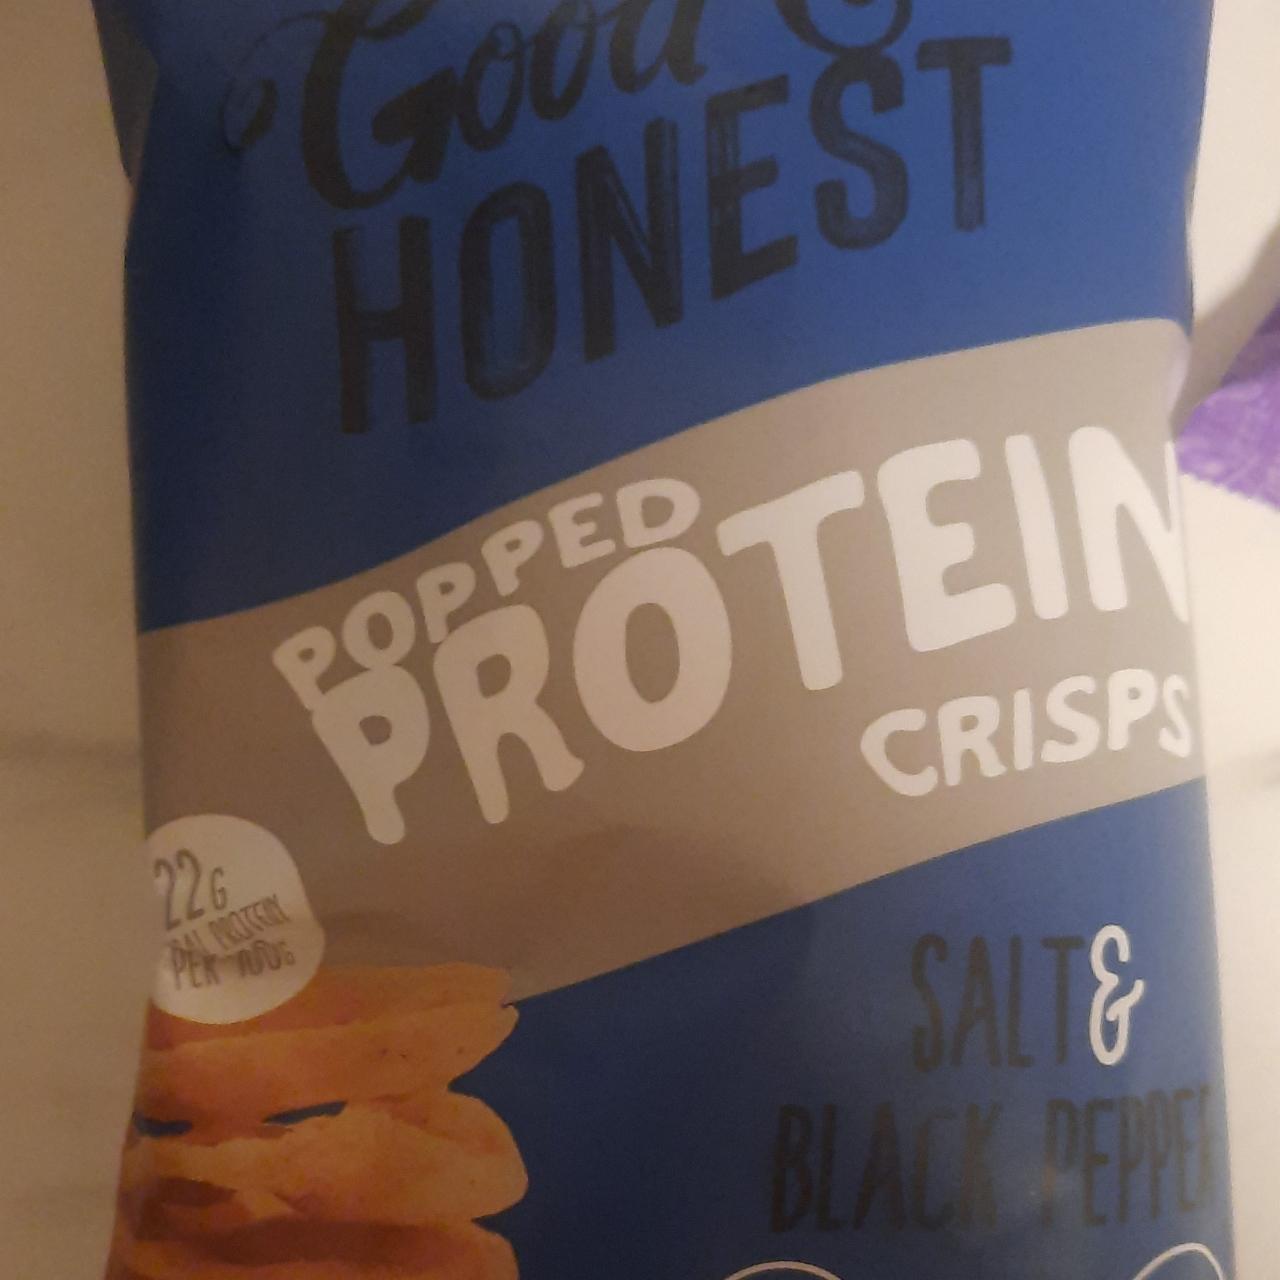 Фото - протеиновые чипсы соль-черный перец Good & honest